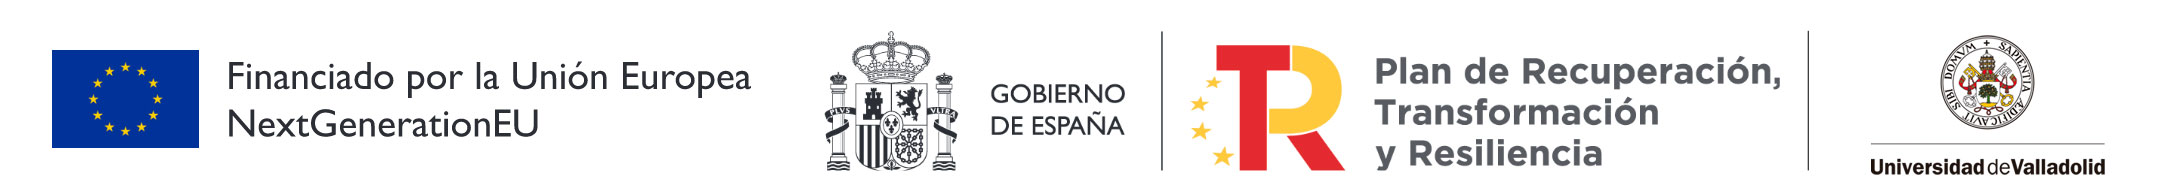 Logos Financiado por la Unión Europea, Gobierno de España, Plan De Recuperación, Transformación y Resilencia y Universidad de Valladolid